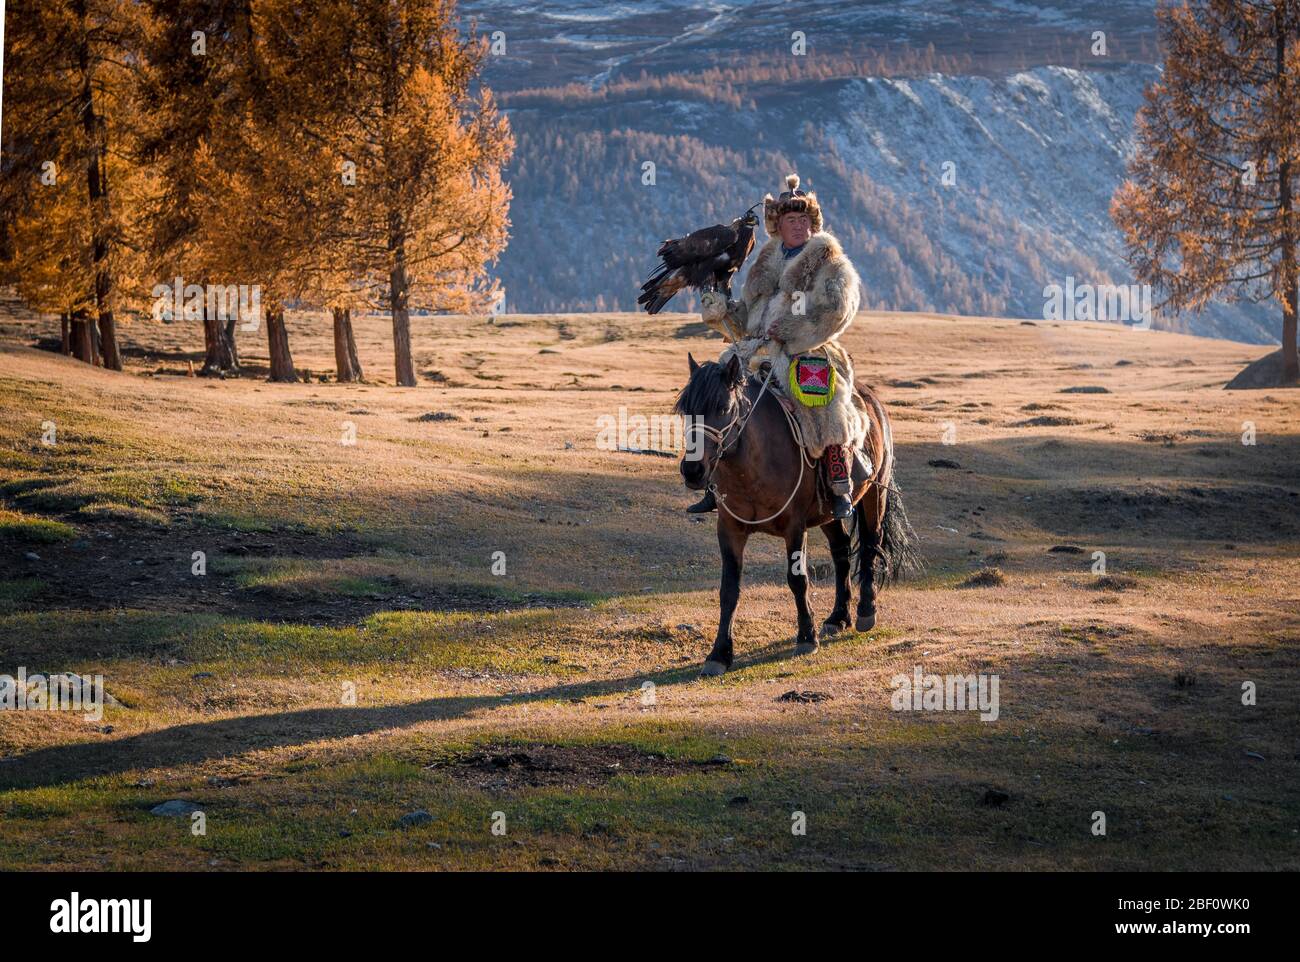 Chasseur d'aigles mongol, le kazakh fait du cheval avec un aigle formé, province de Bayan-Olgii, Mongolie Banque D'Images